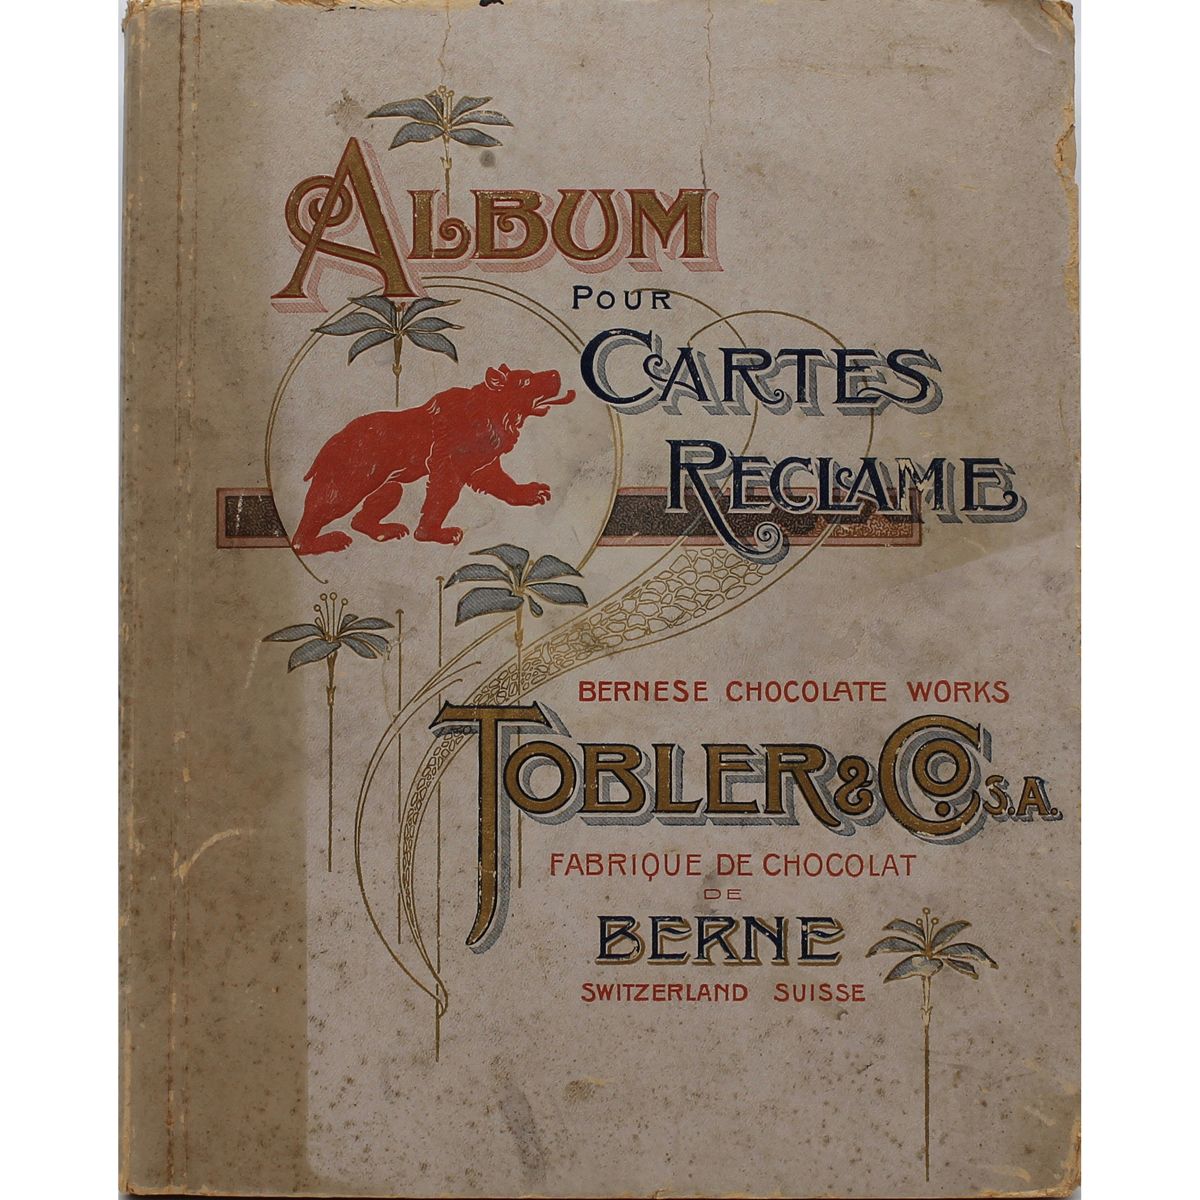 ALBUM POUR CARTES RECLAME "Tobler & Co." Début du 20e siècle
Début du 20e siècle